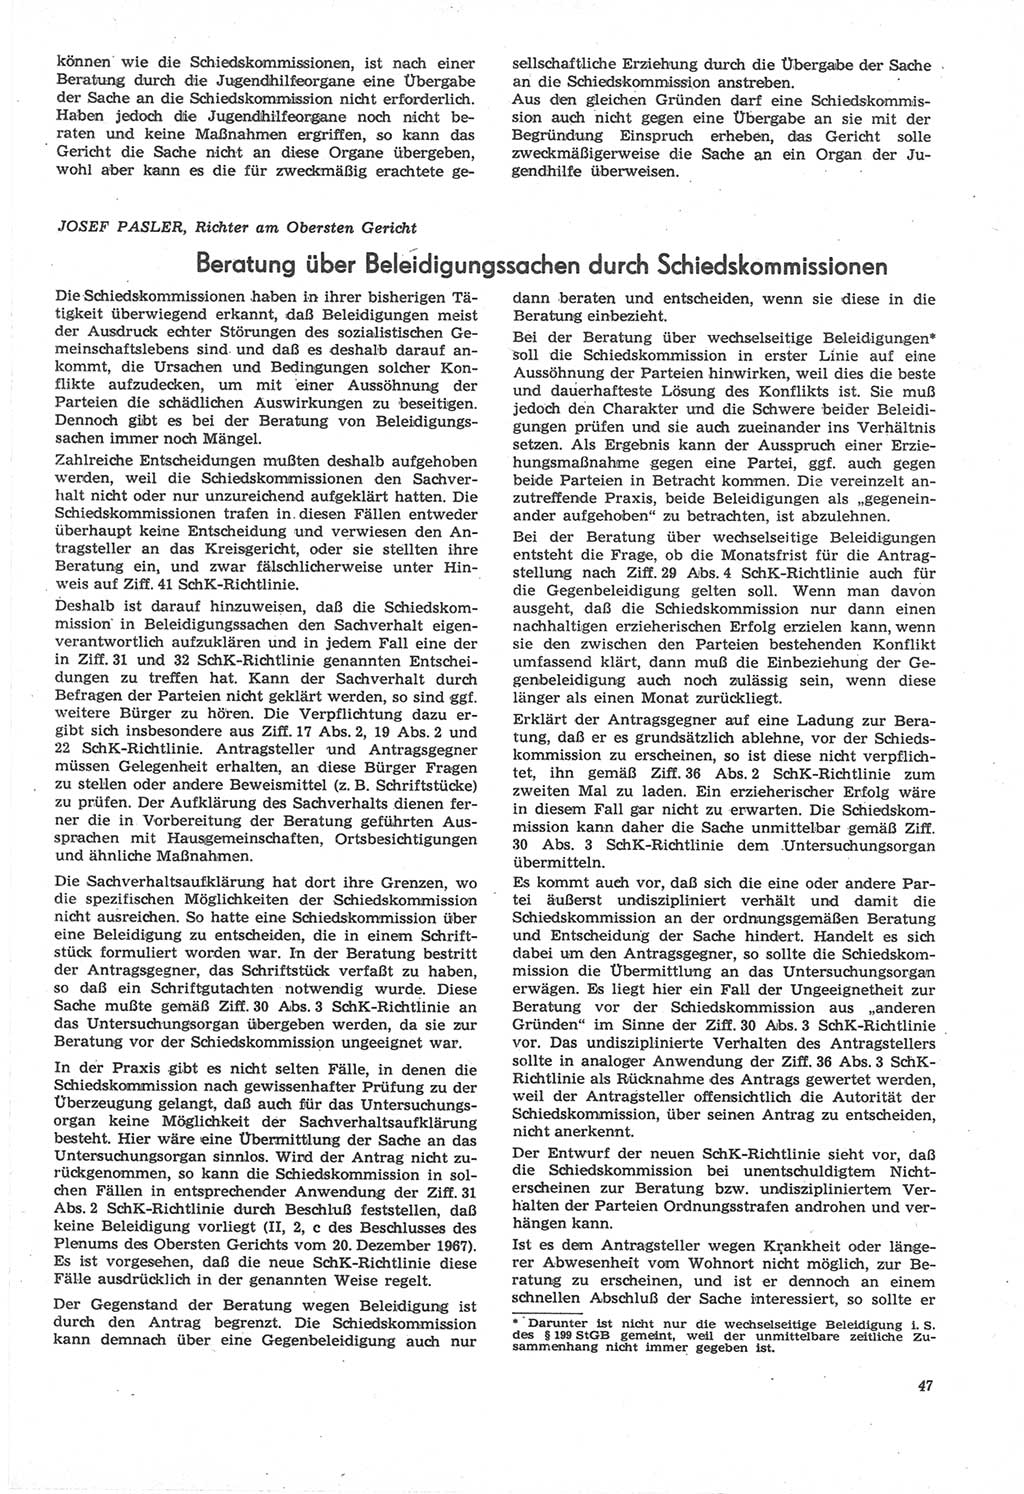 Neue Justiz (NJ), Zeitschrift für Recht und Rechtswissenschaft [Deutsche Demokratische Republik (DDR)], 22. Jahrgang 1968, Seite 47 (NJ DDR 1968, S. 47)